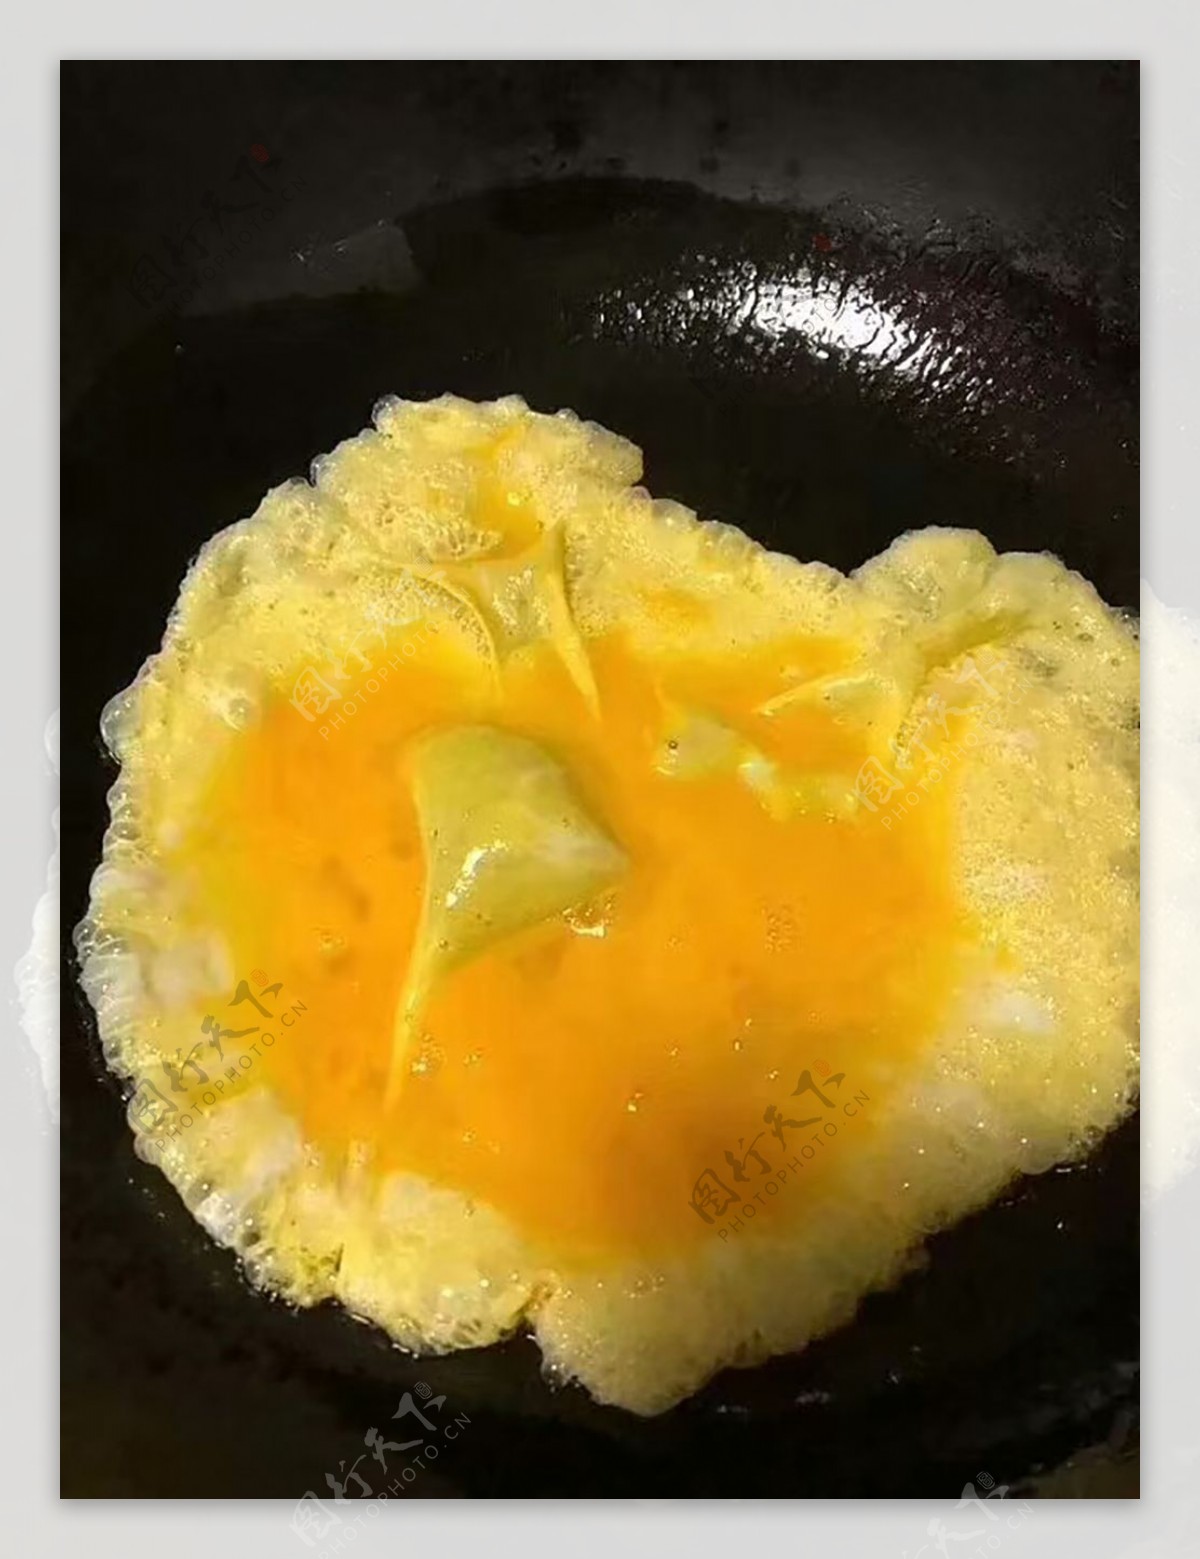 溏心煎蛋怎么做_溏心煎蛋的做法_漪弈_木一_豆果美食